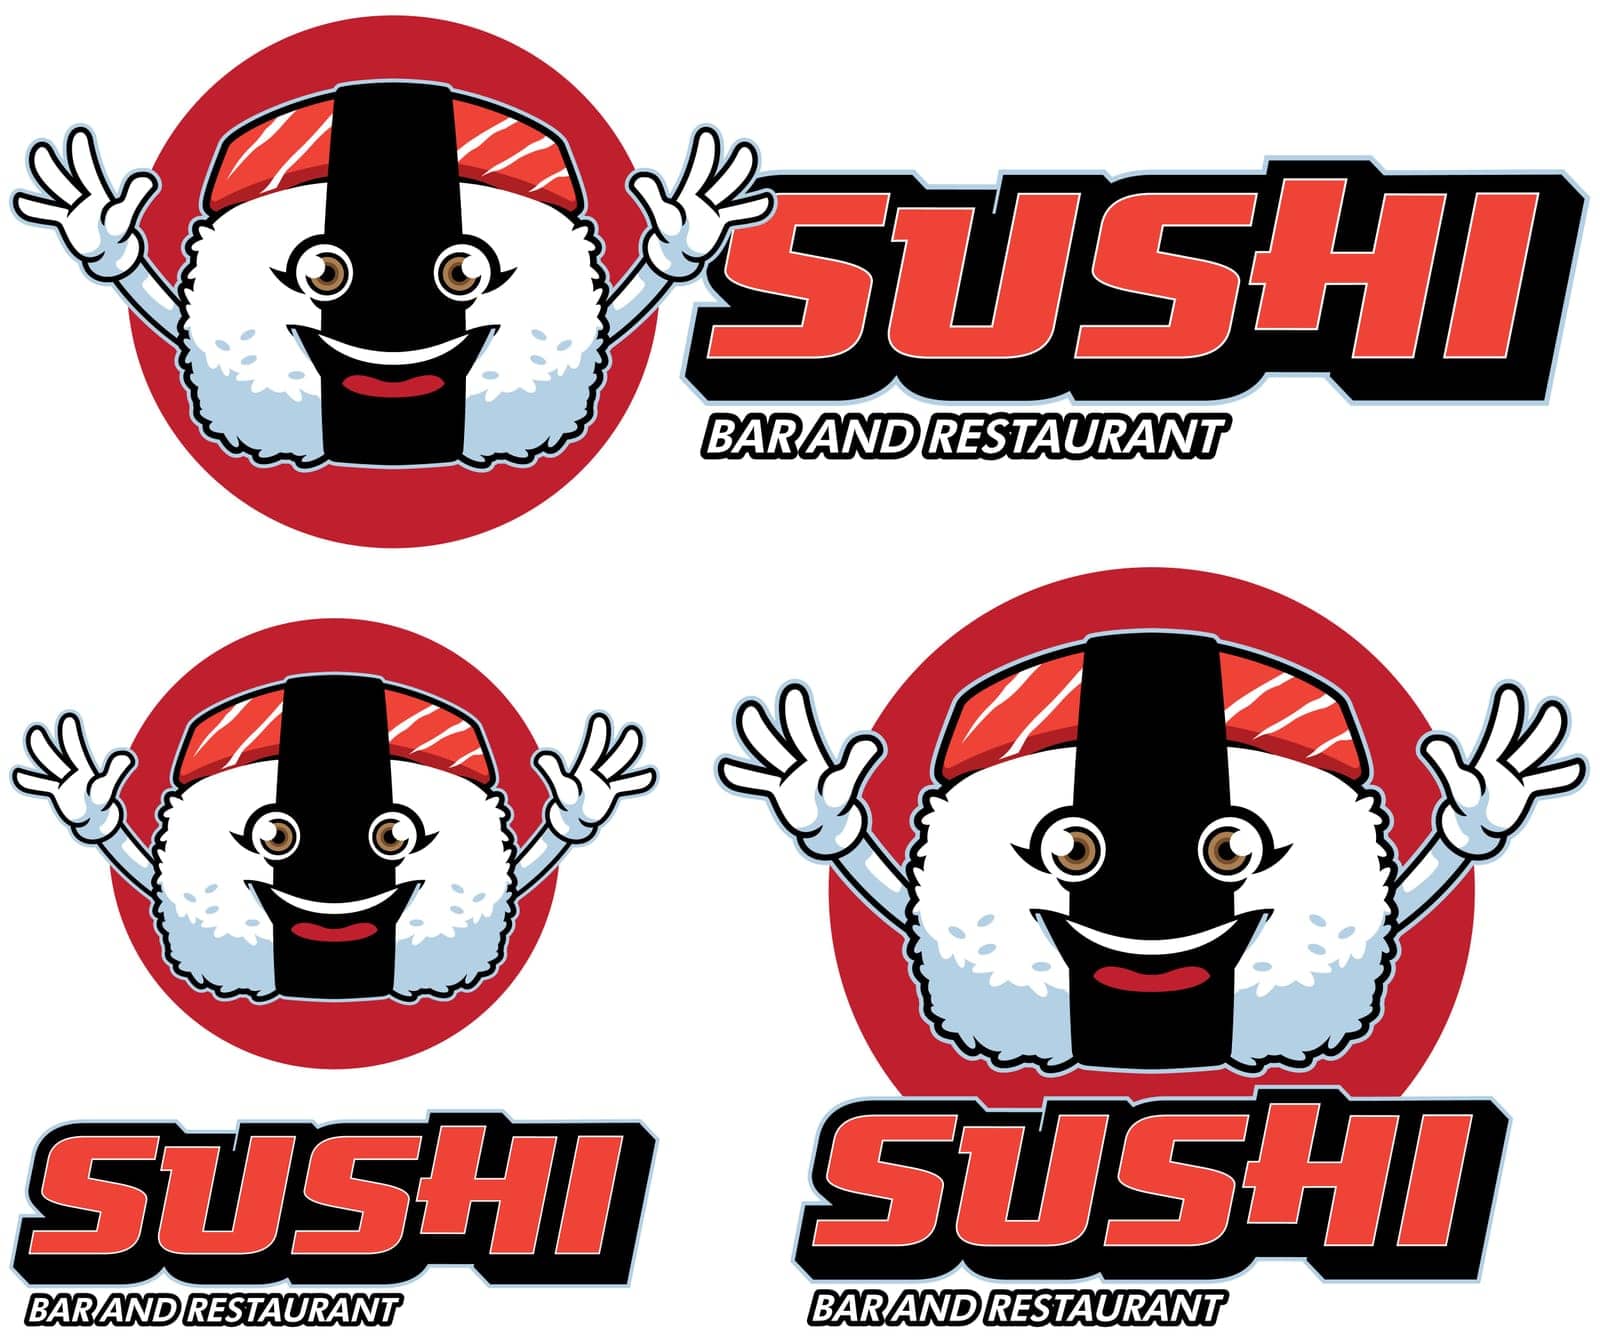 Sushi Restaurant Mascot by Malchev